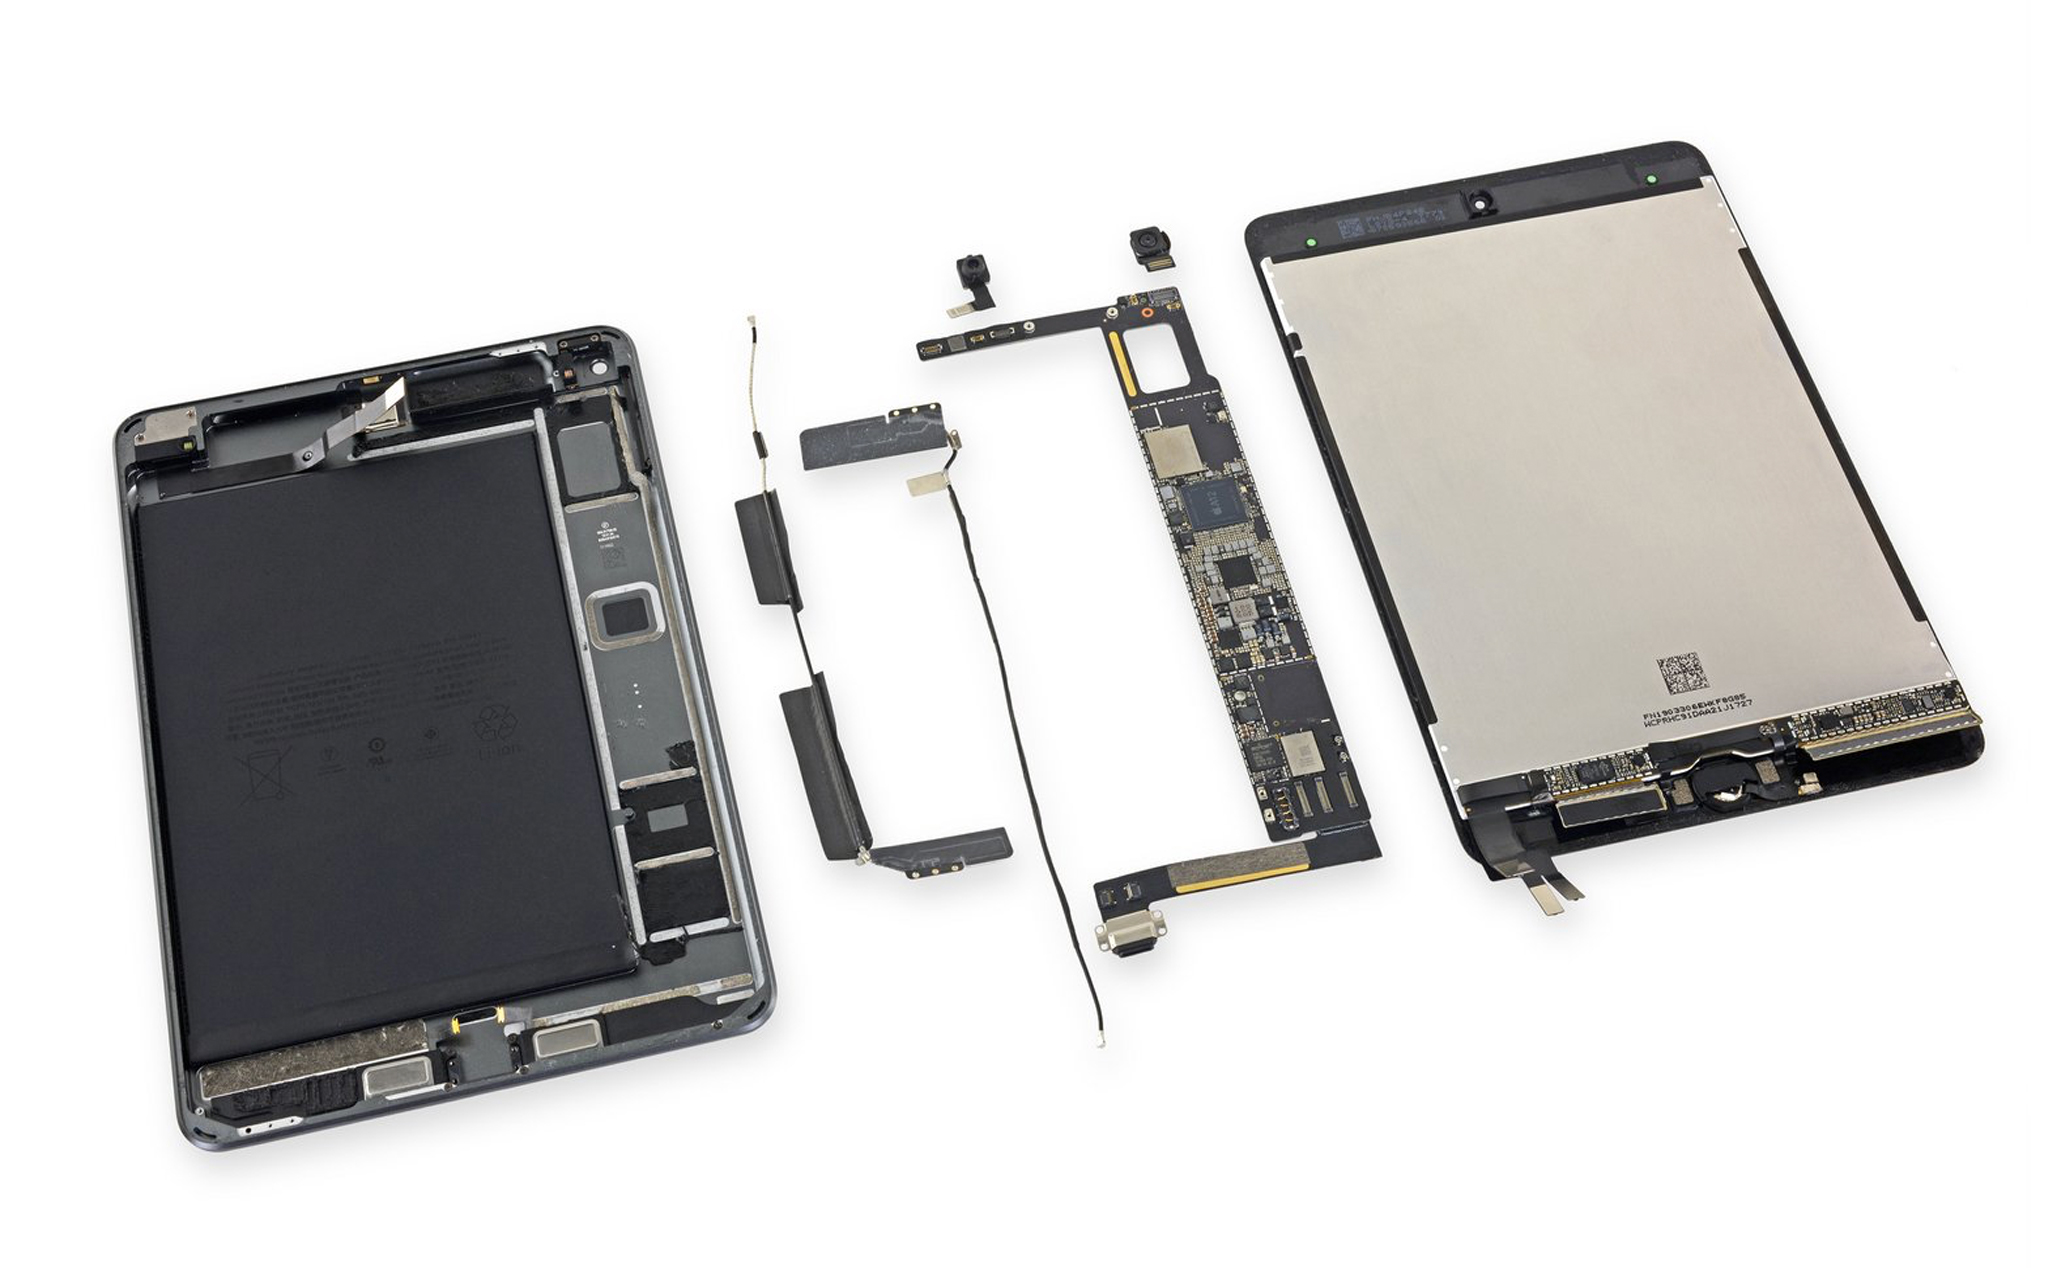 Mổ bụng bên trong iPad Mini mới: Nhiều keo, pin khó thay thế, RAM 3 GB, iFixit chấm 2 điểm